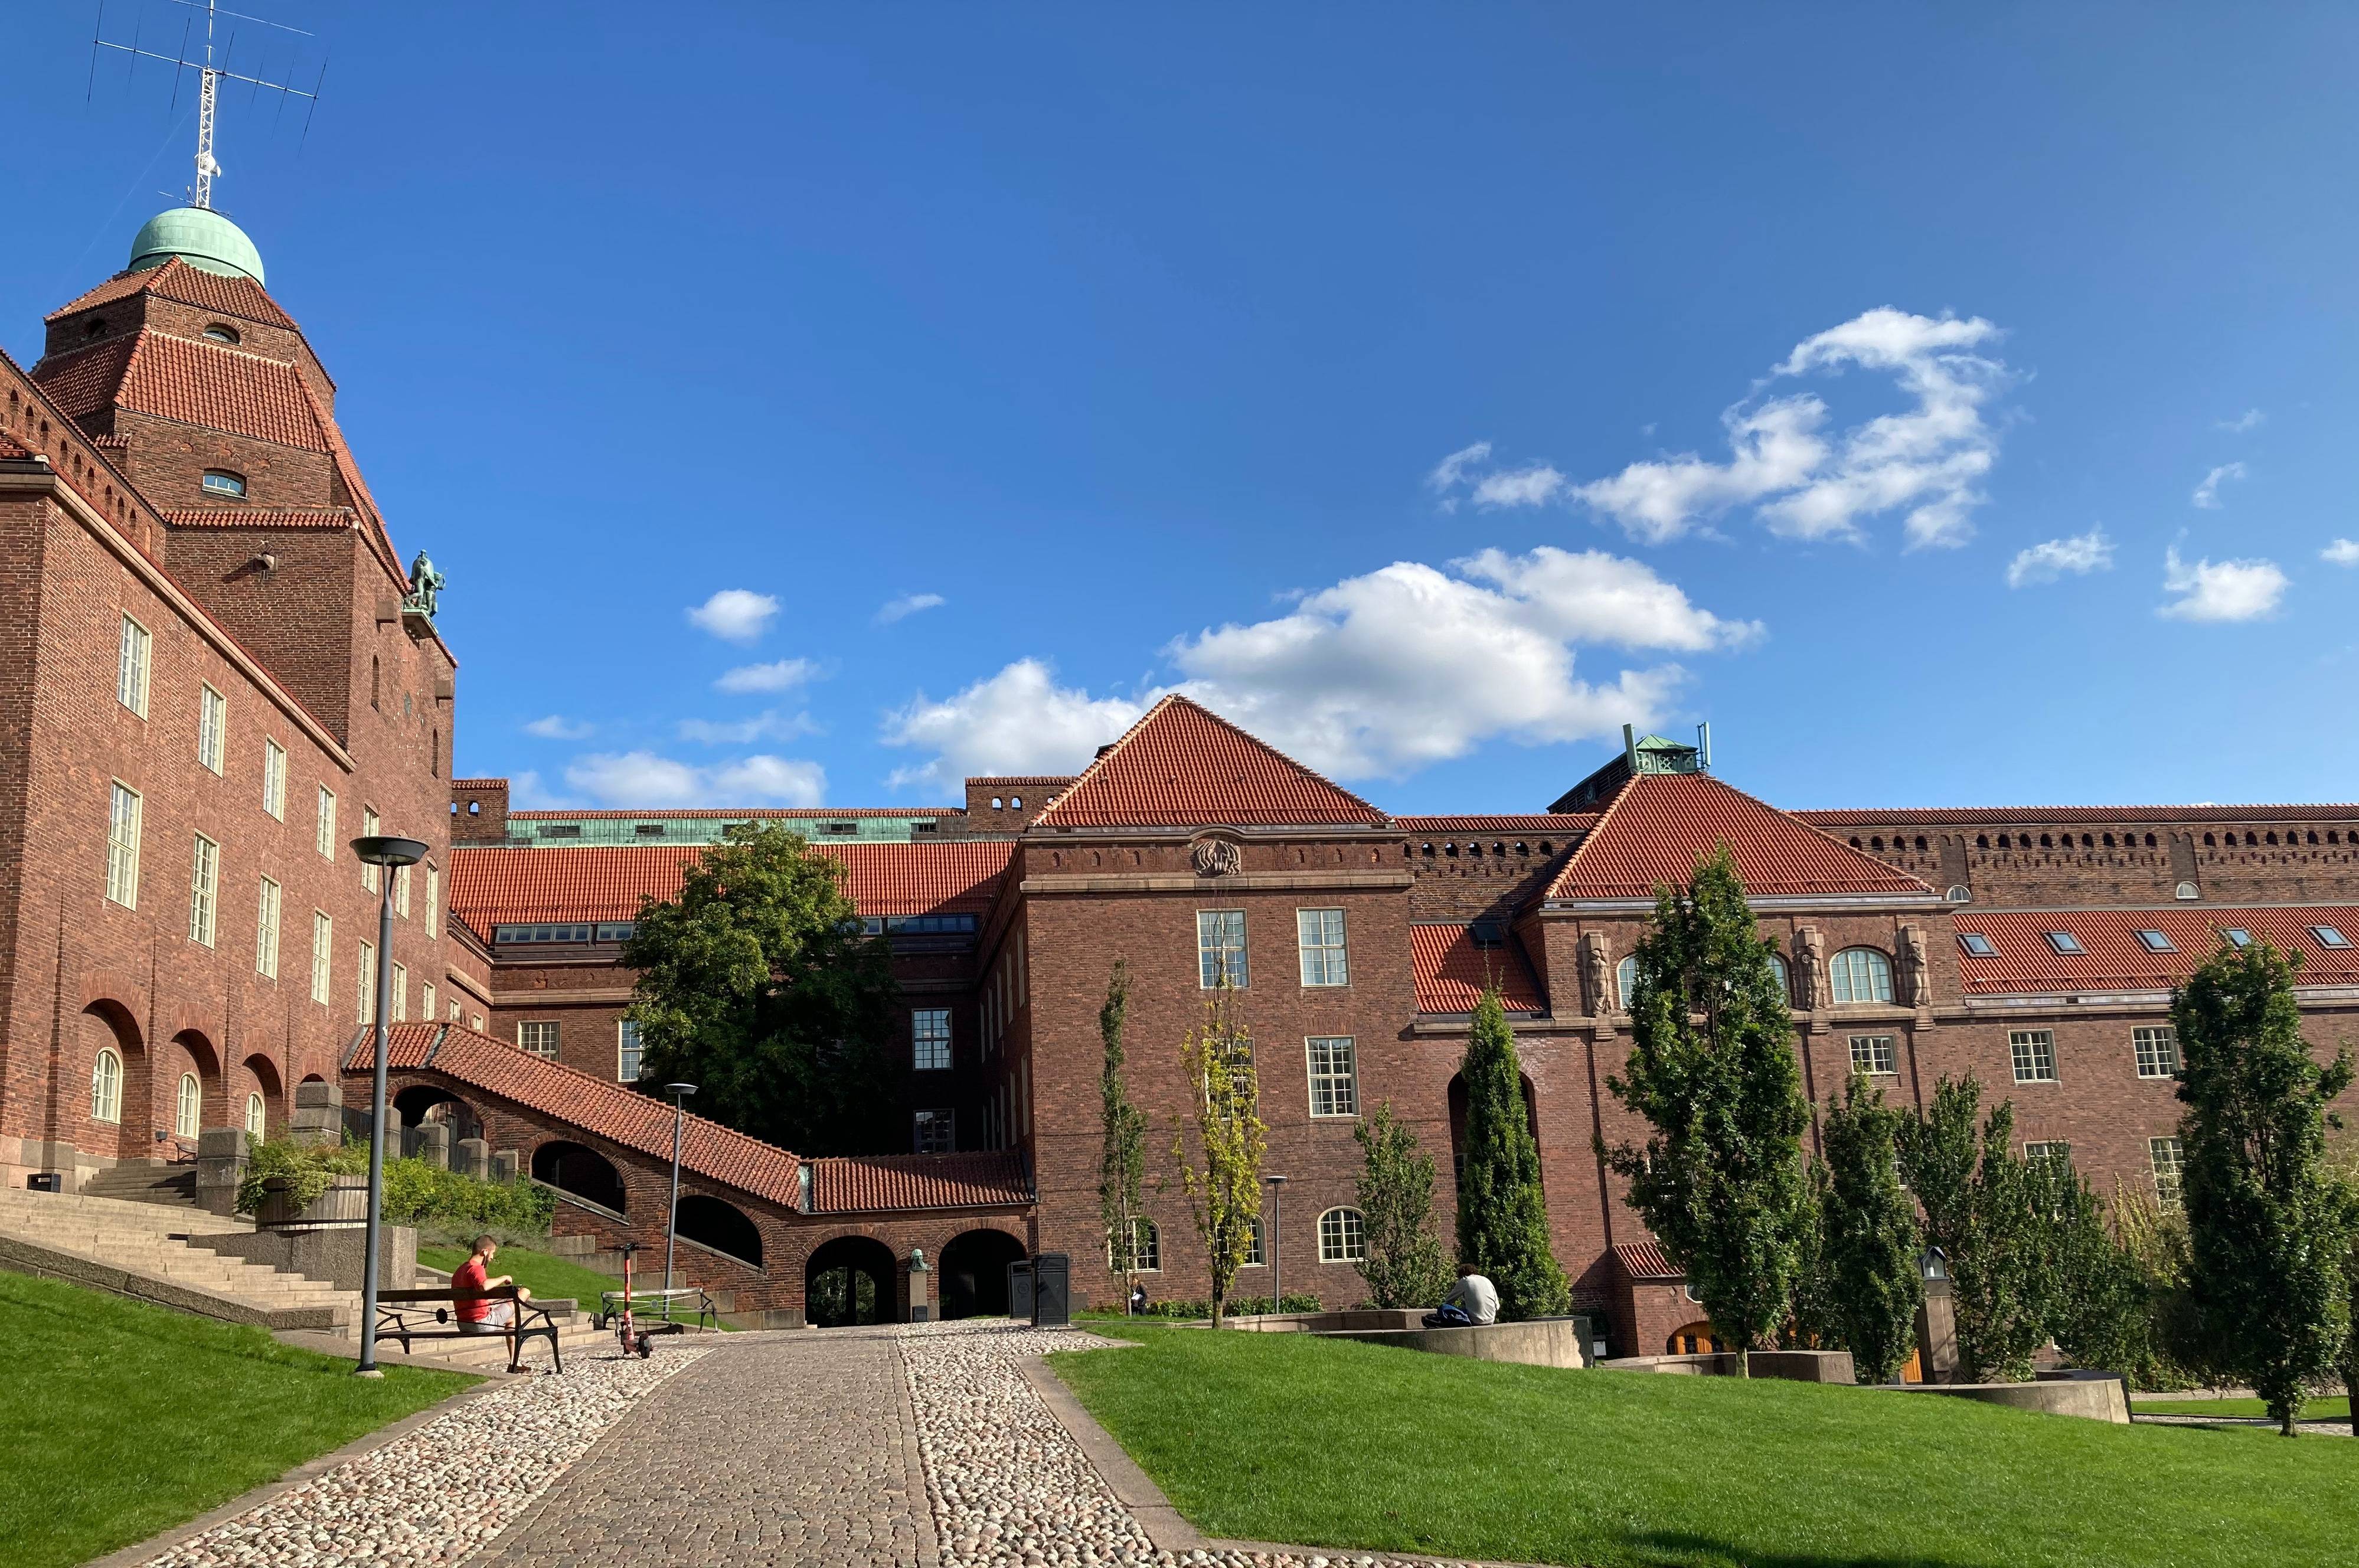 瑞典皇家理工学院,在北欧仅次于德国慕尼黑工大的著名理工科大学